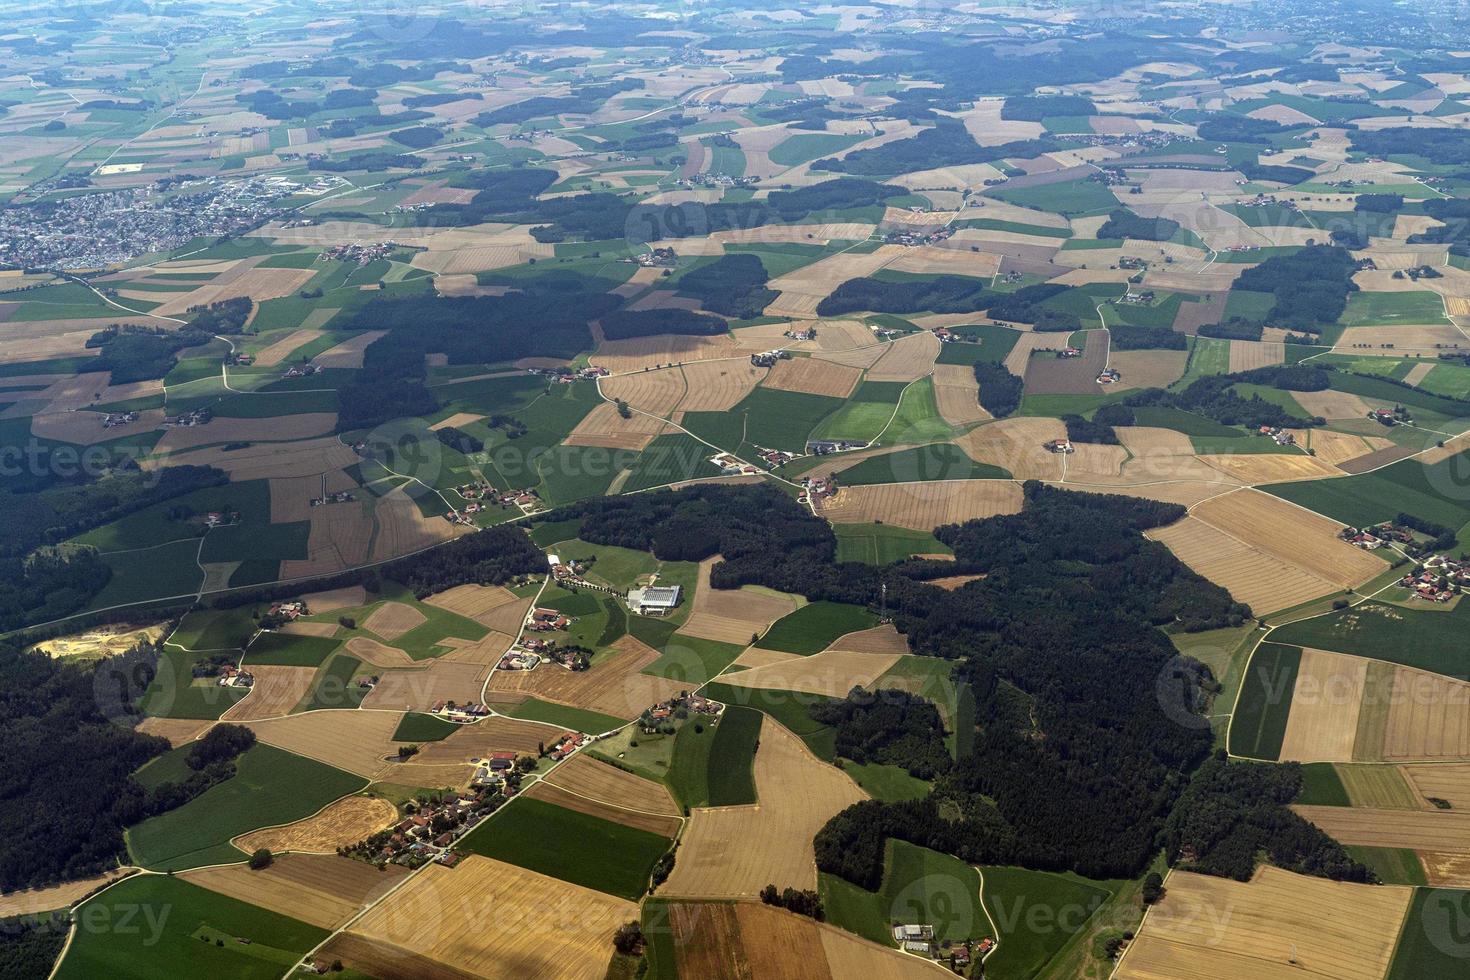 bavaria alemanha campos cultivados vista aérea paisagem foto